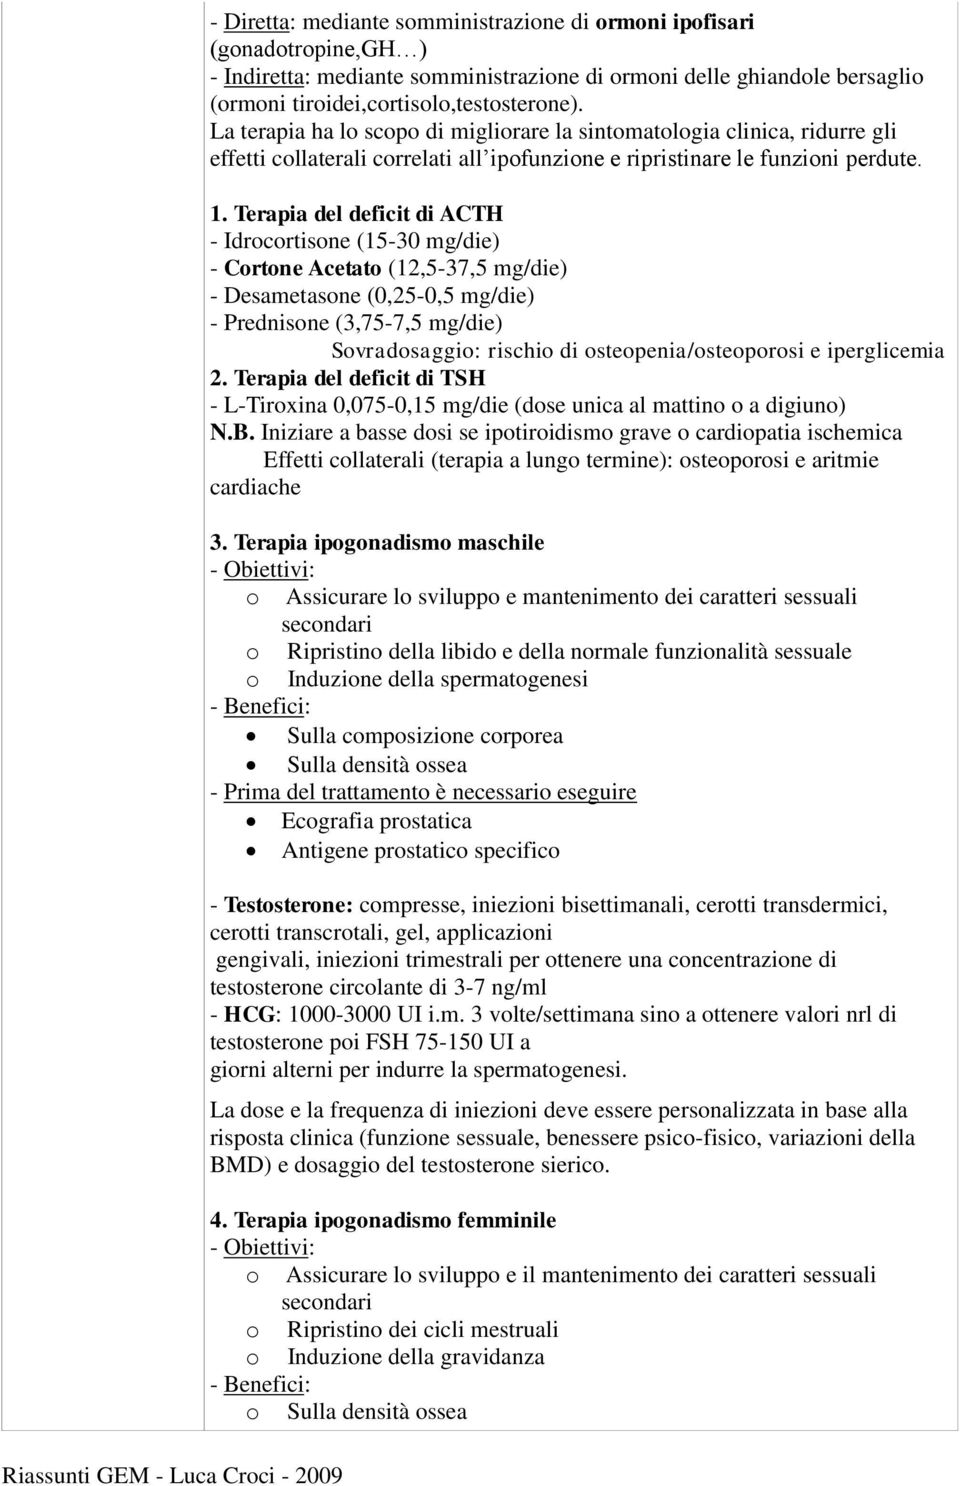 Terapia del deficit di ACTH - Idrocortisone (15-30 mg/die) - Cortone Acetato (12,5-37,5 mg/die) - Desametasone (0,25-0,5 mg/die) - Prednisone (3,75-7,5 mg/die) Sovradosaggio: rischio di